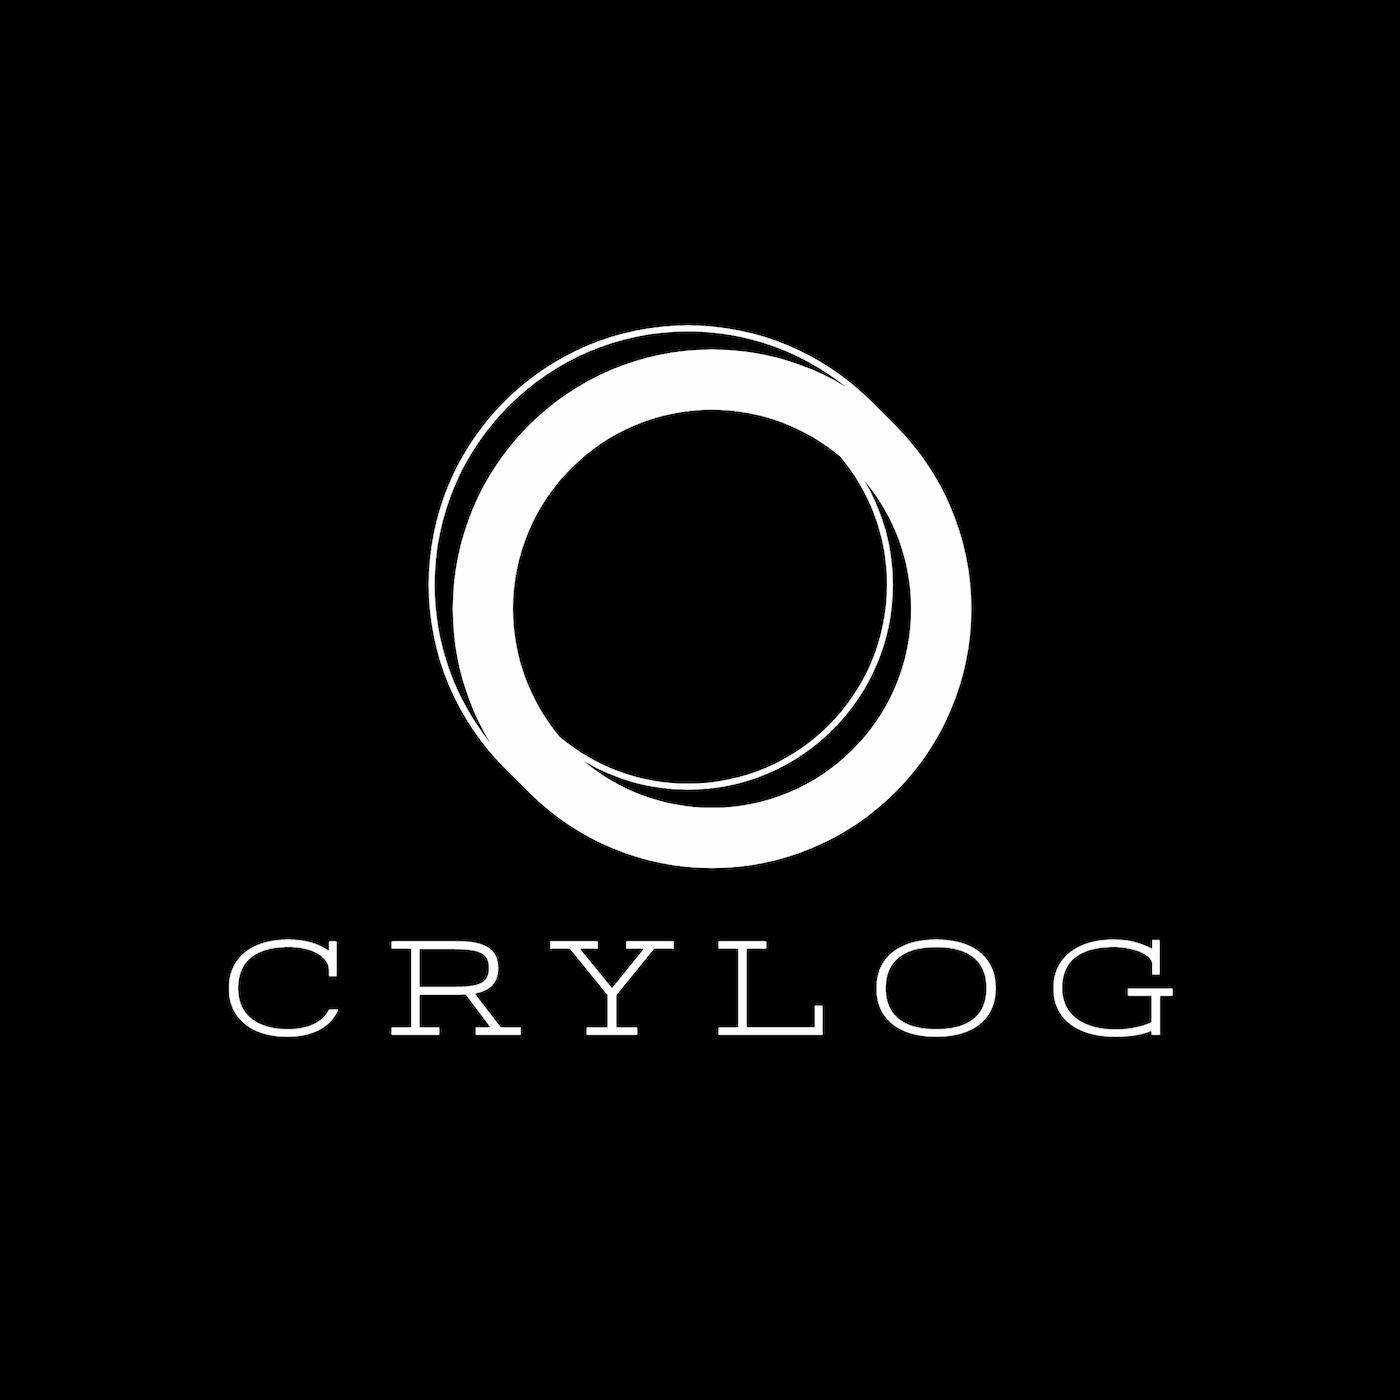 Crylog